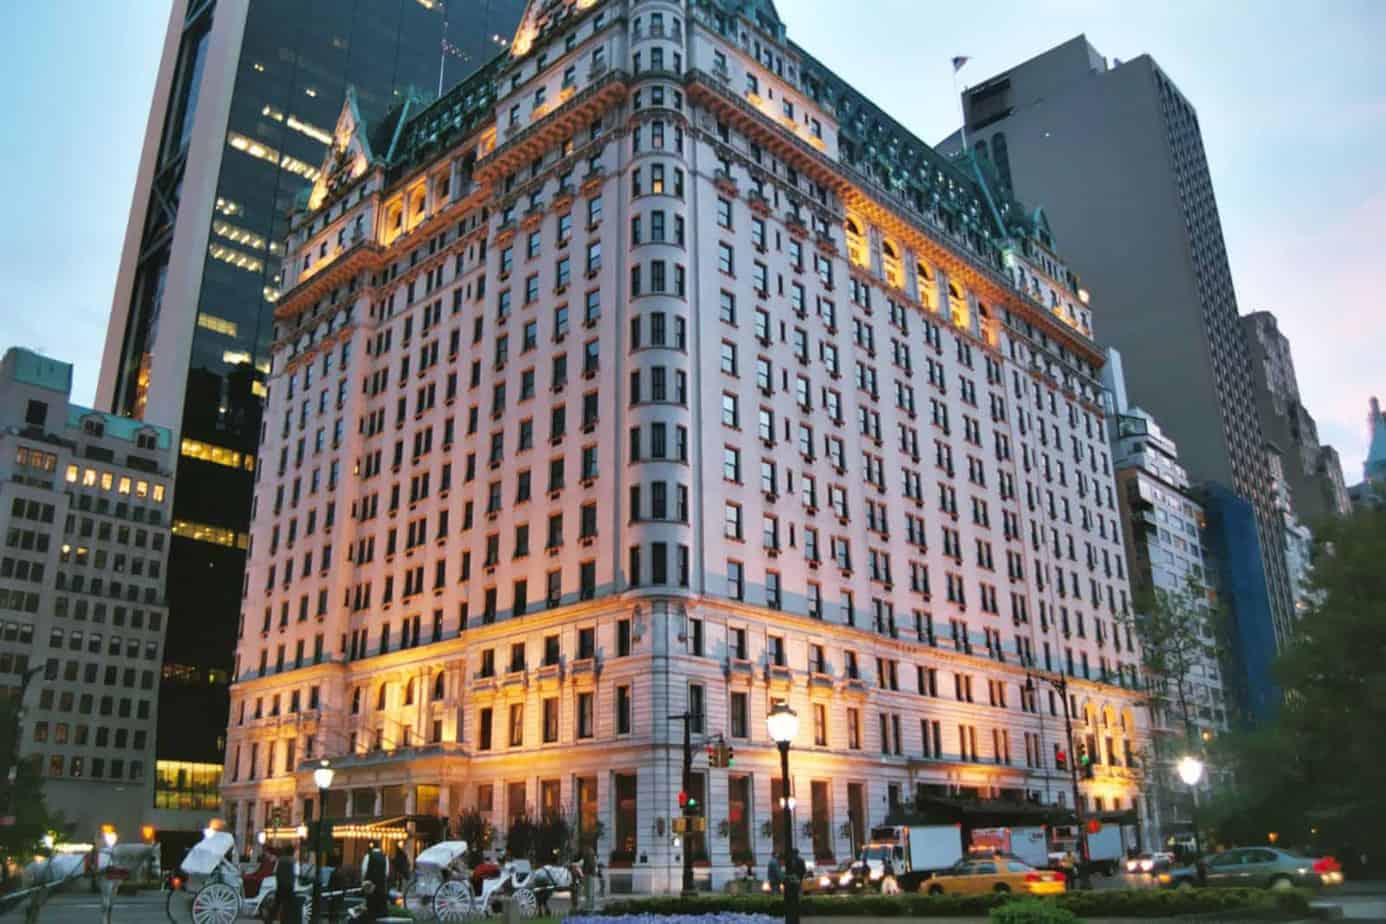 افضل 15 فندق في نيويورك من المسافرون العرب